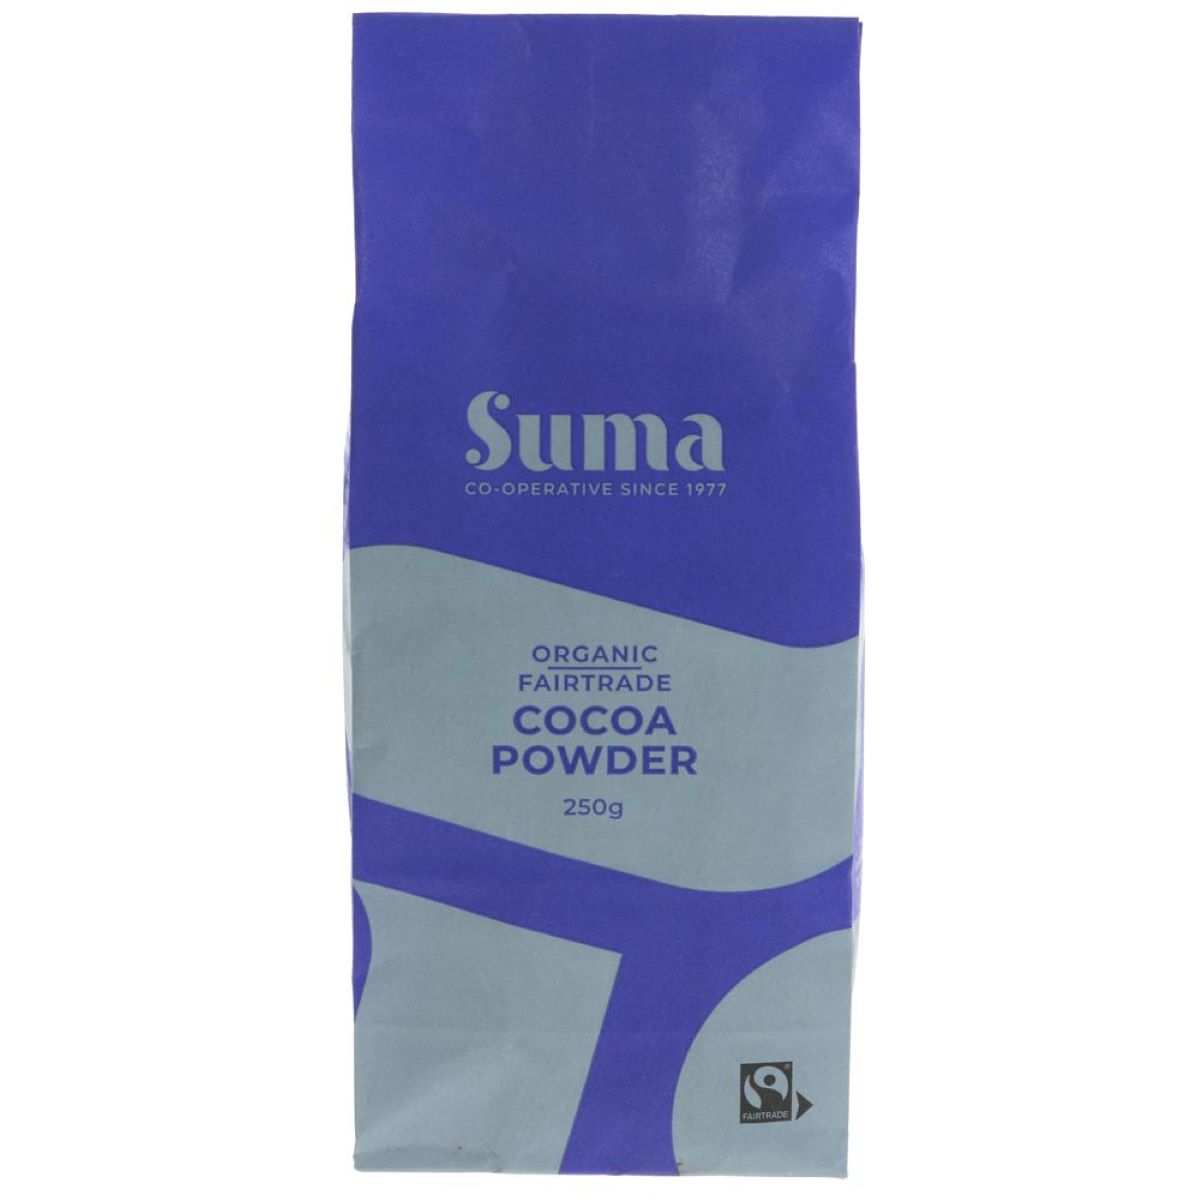 Suma Organic Fairtrade Cocoa Powder 250g